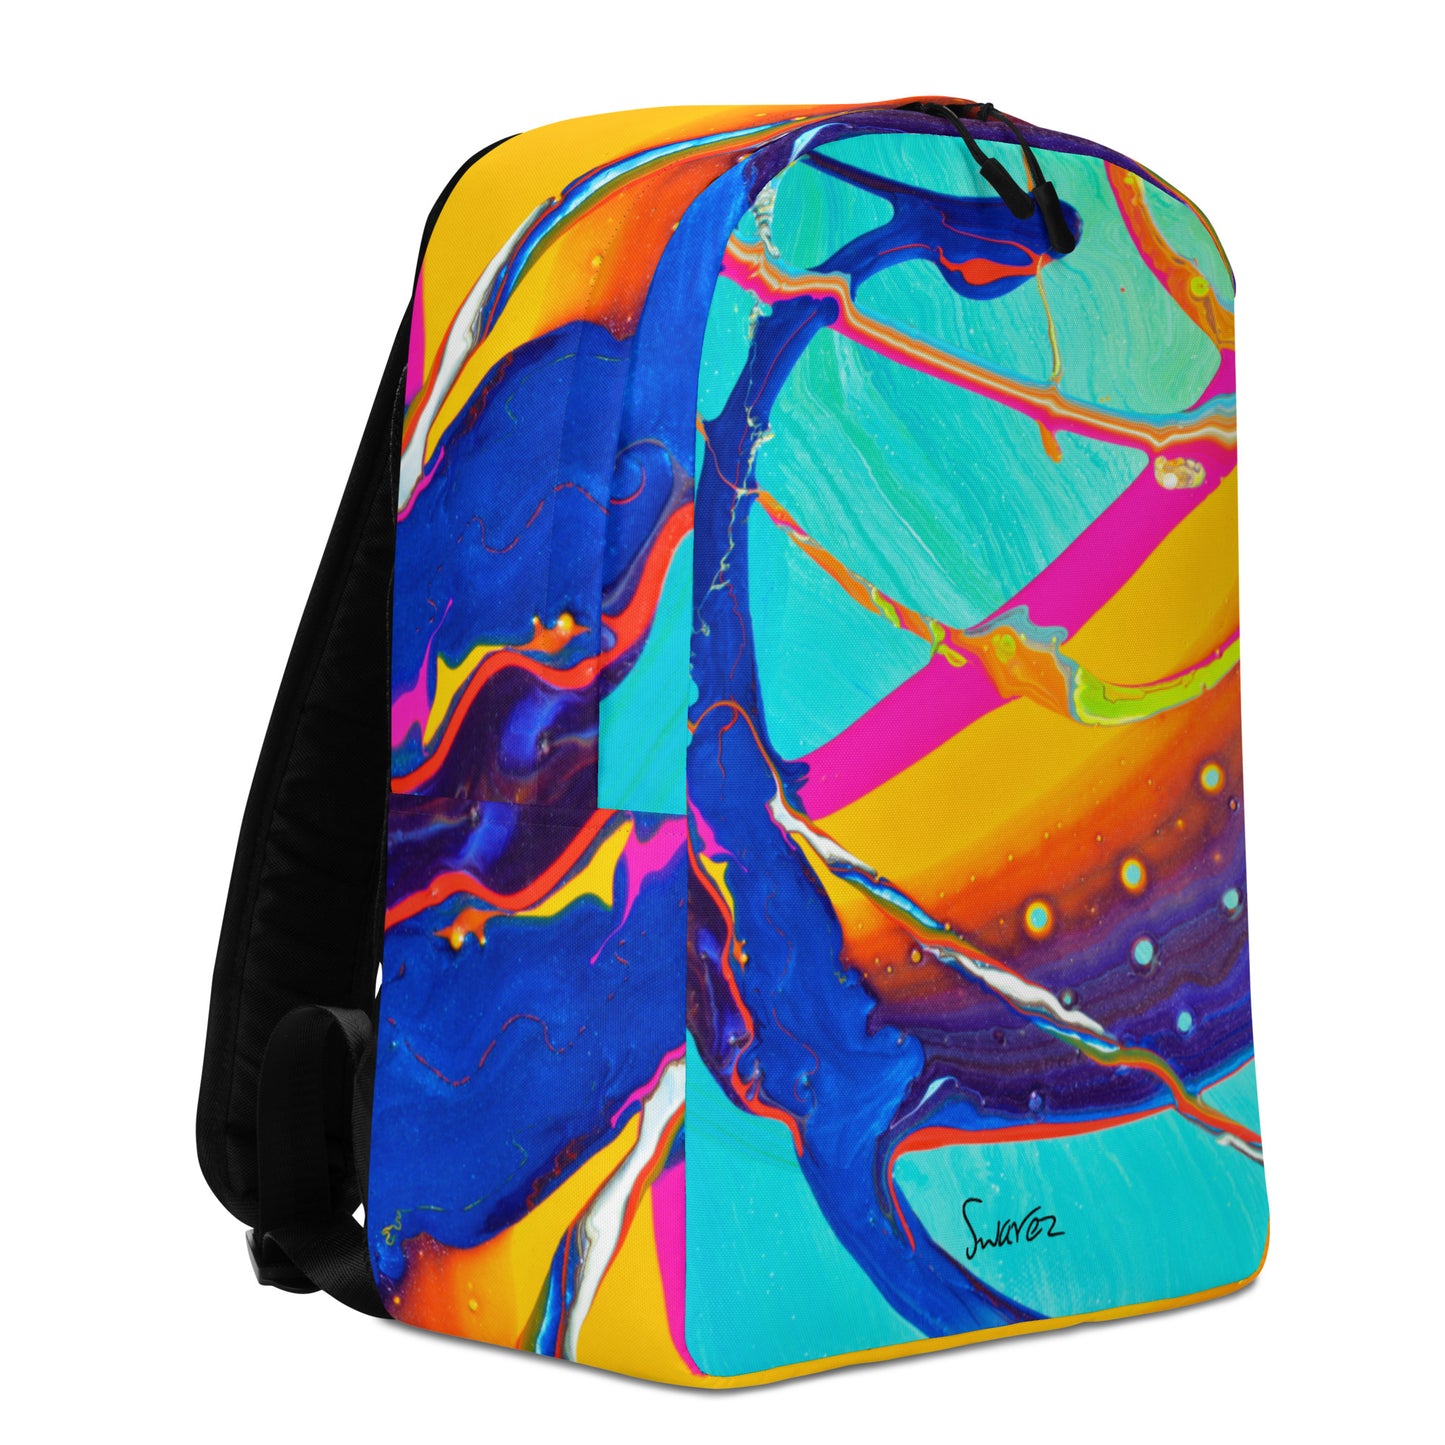 Minimalist Backpack - Rainbow design